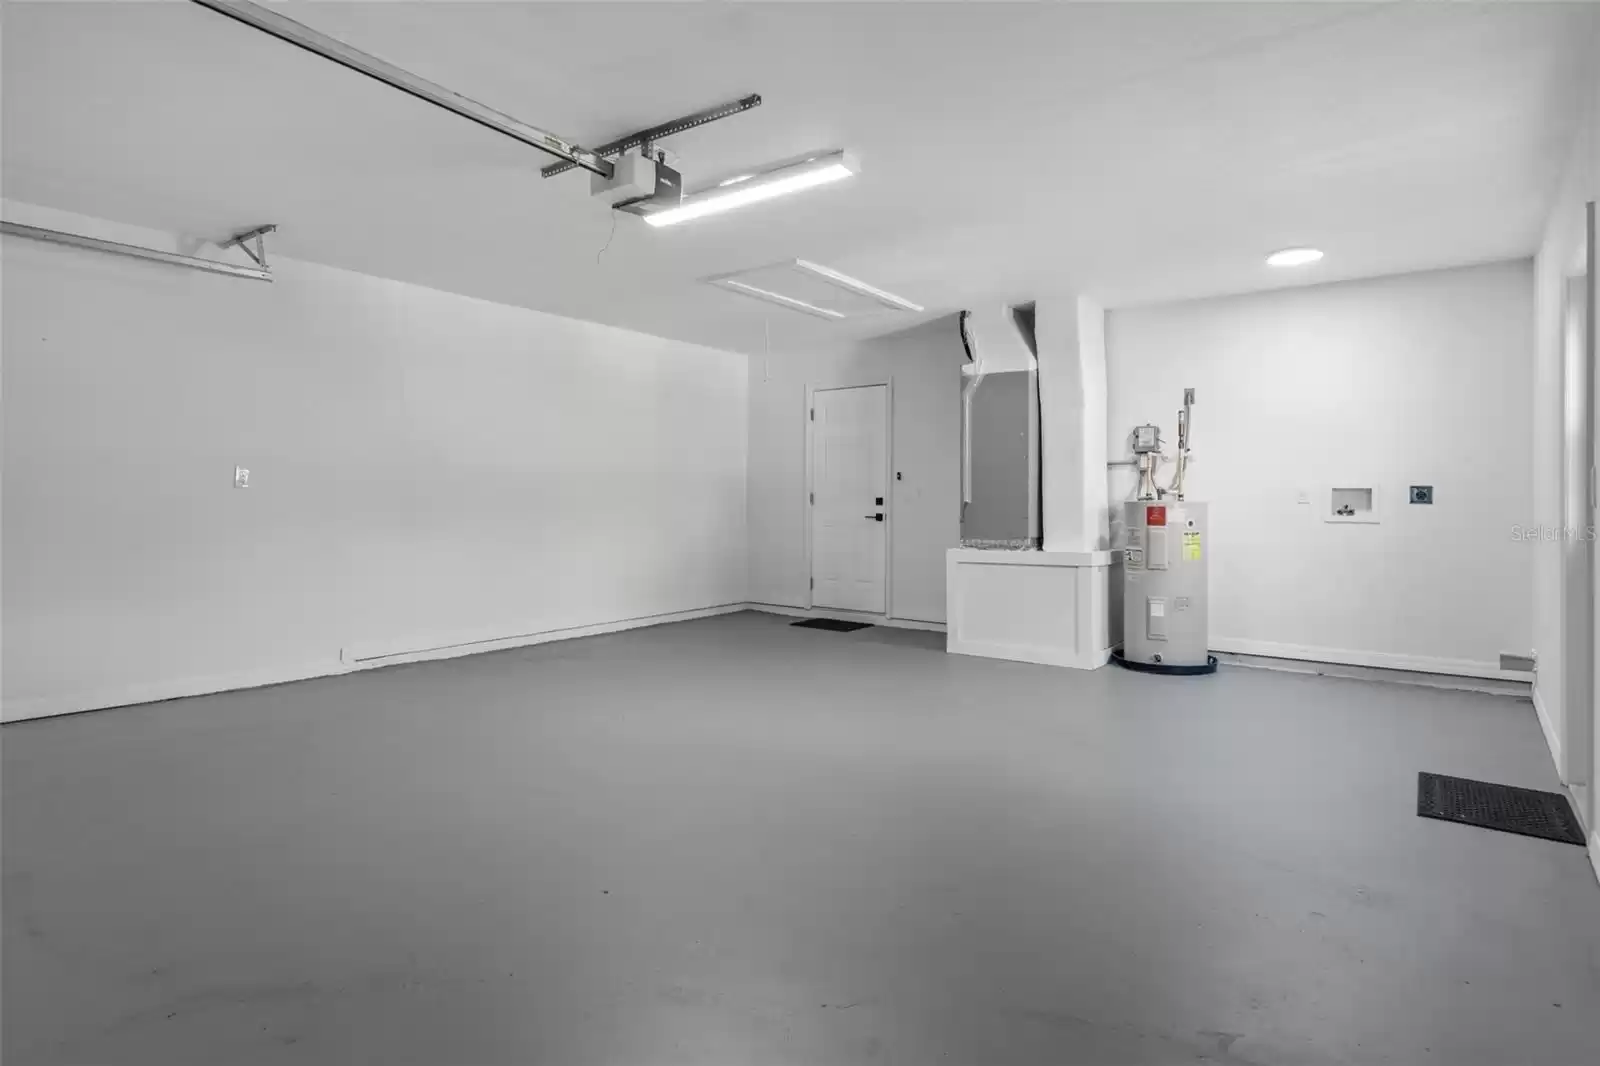 Garage w/new epoxy flooring